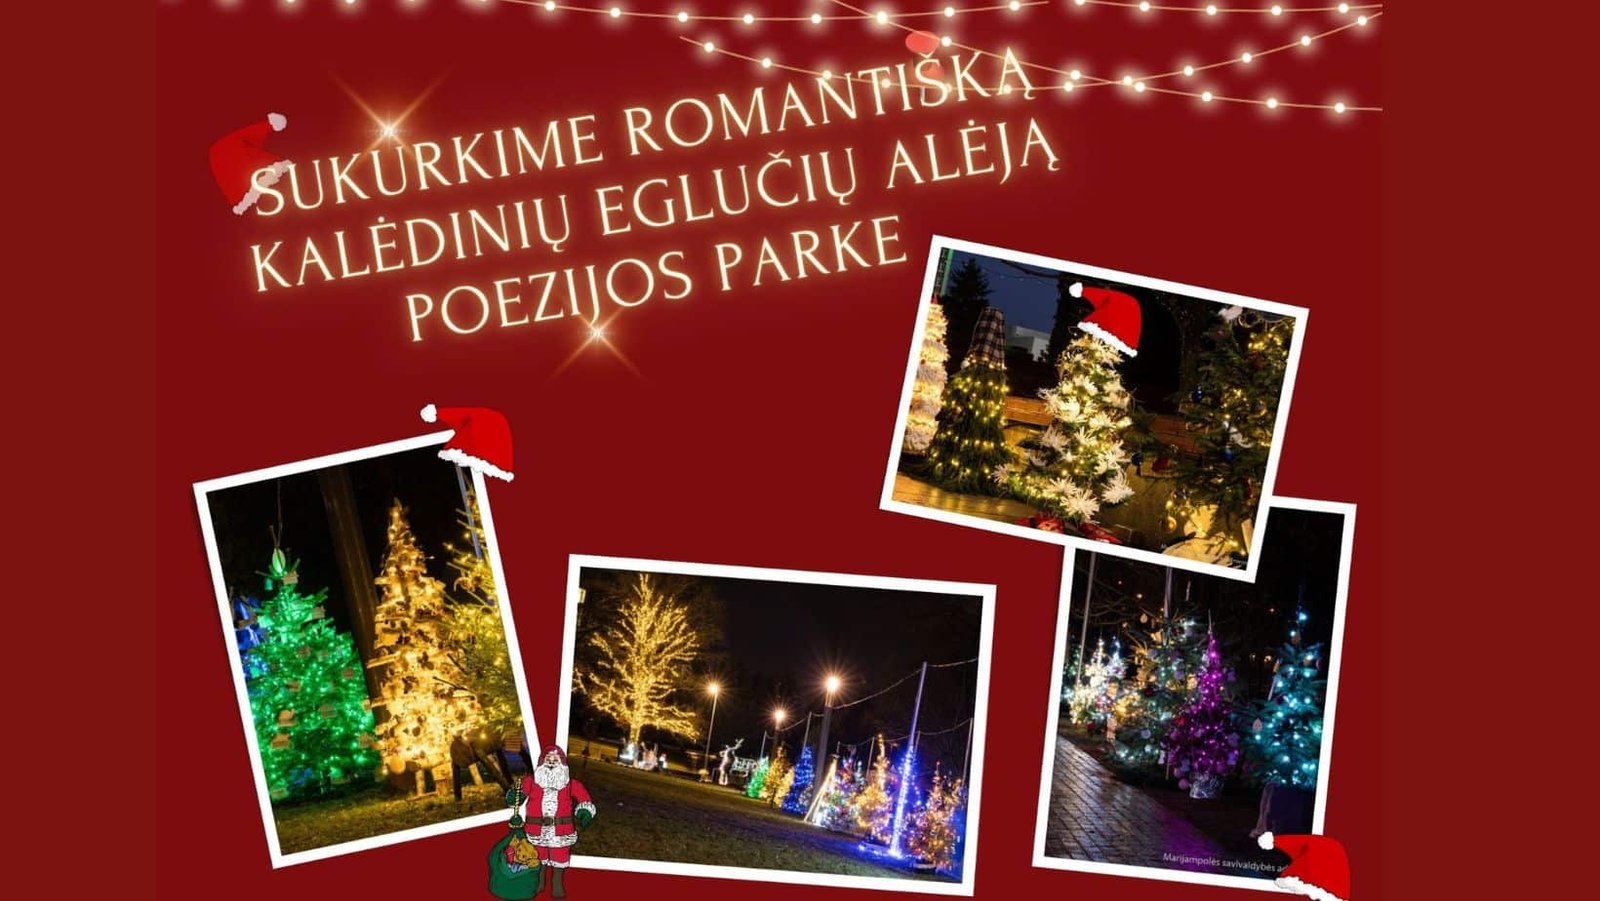 You are currently viewing Sukurkime romantišką kalėdinių eglučių alėją Poezijos parke!